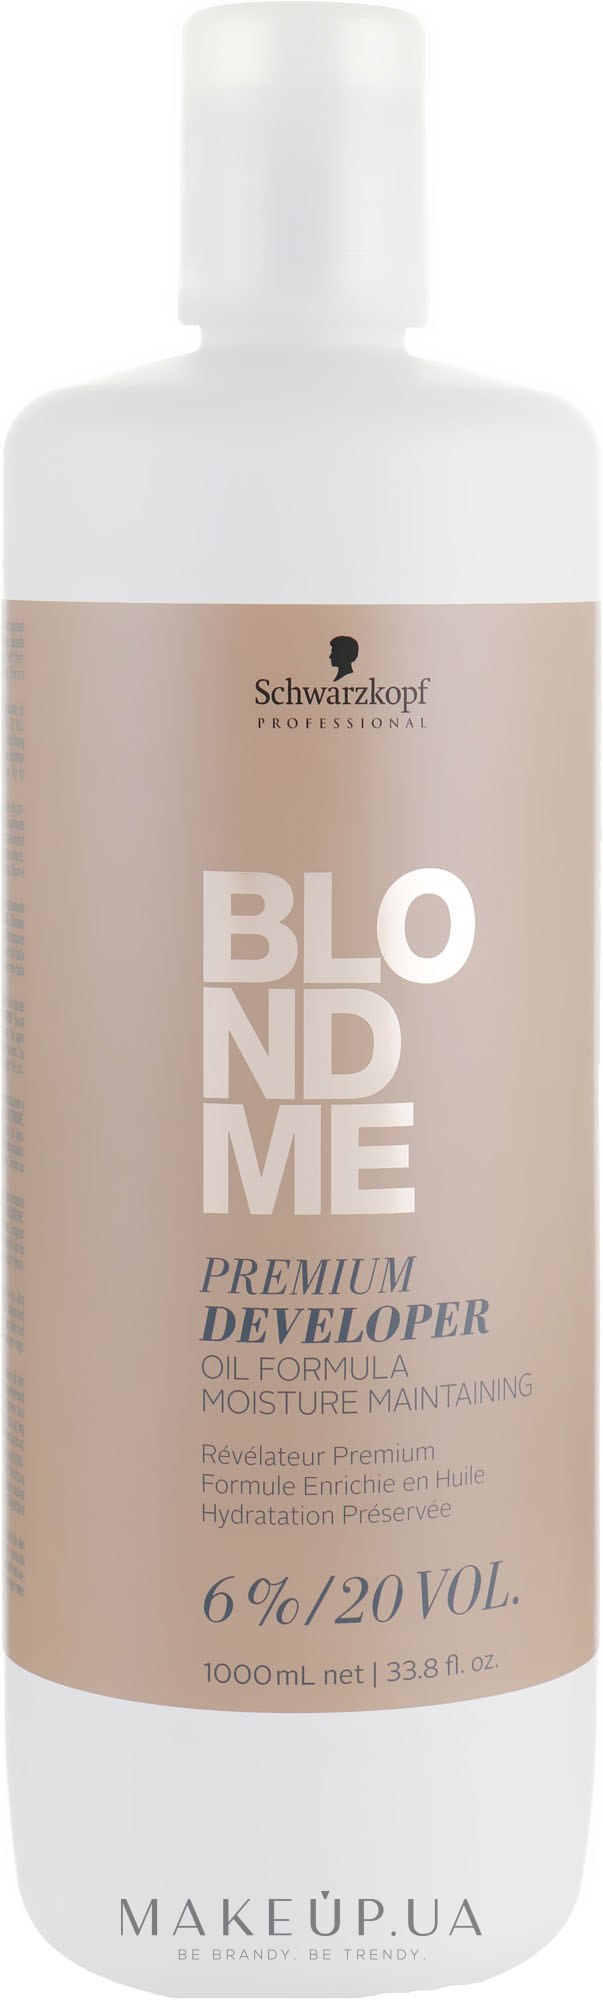 Преміум-Окислювач 6%, 20 Vol. - Schwarzkopf Professional Blondme Premium Developer 6% — фото 1000ml